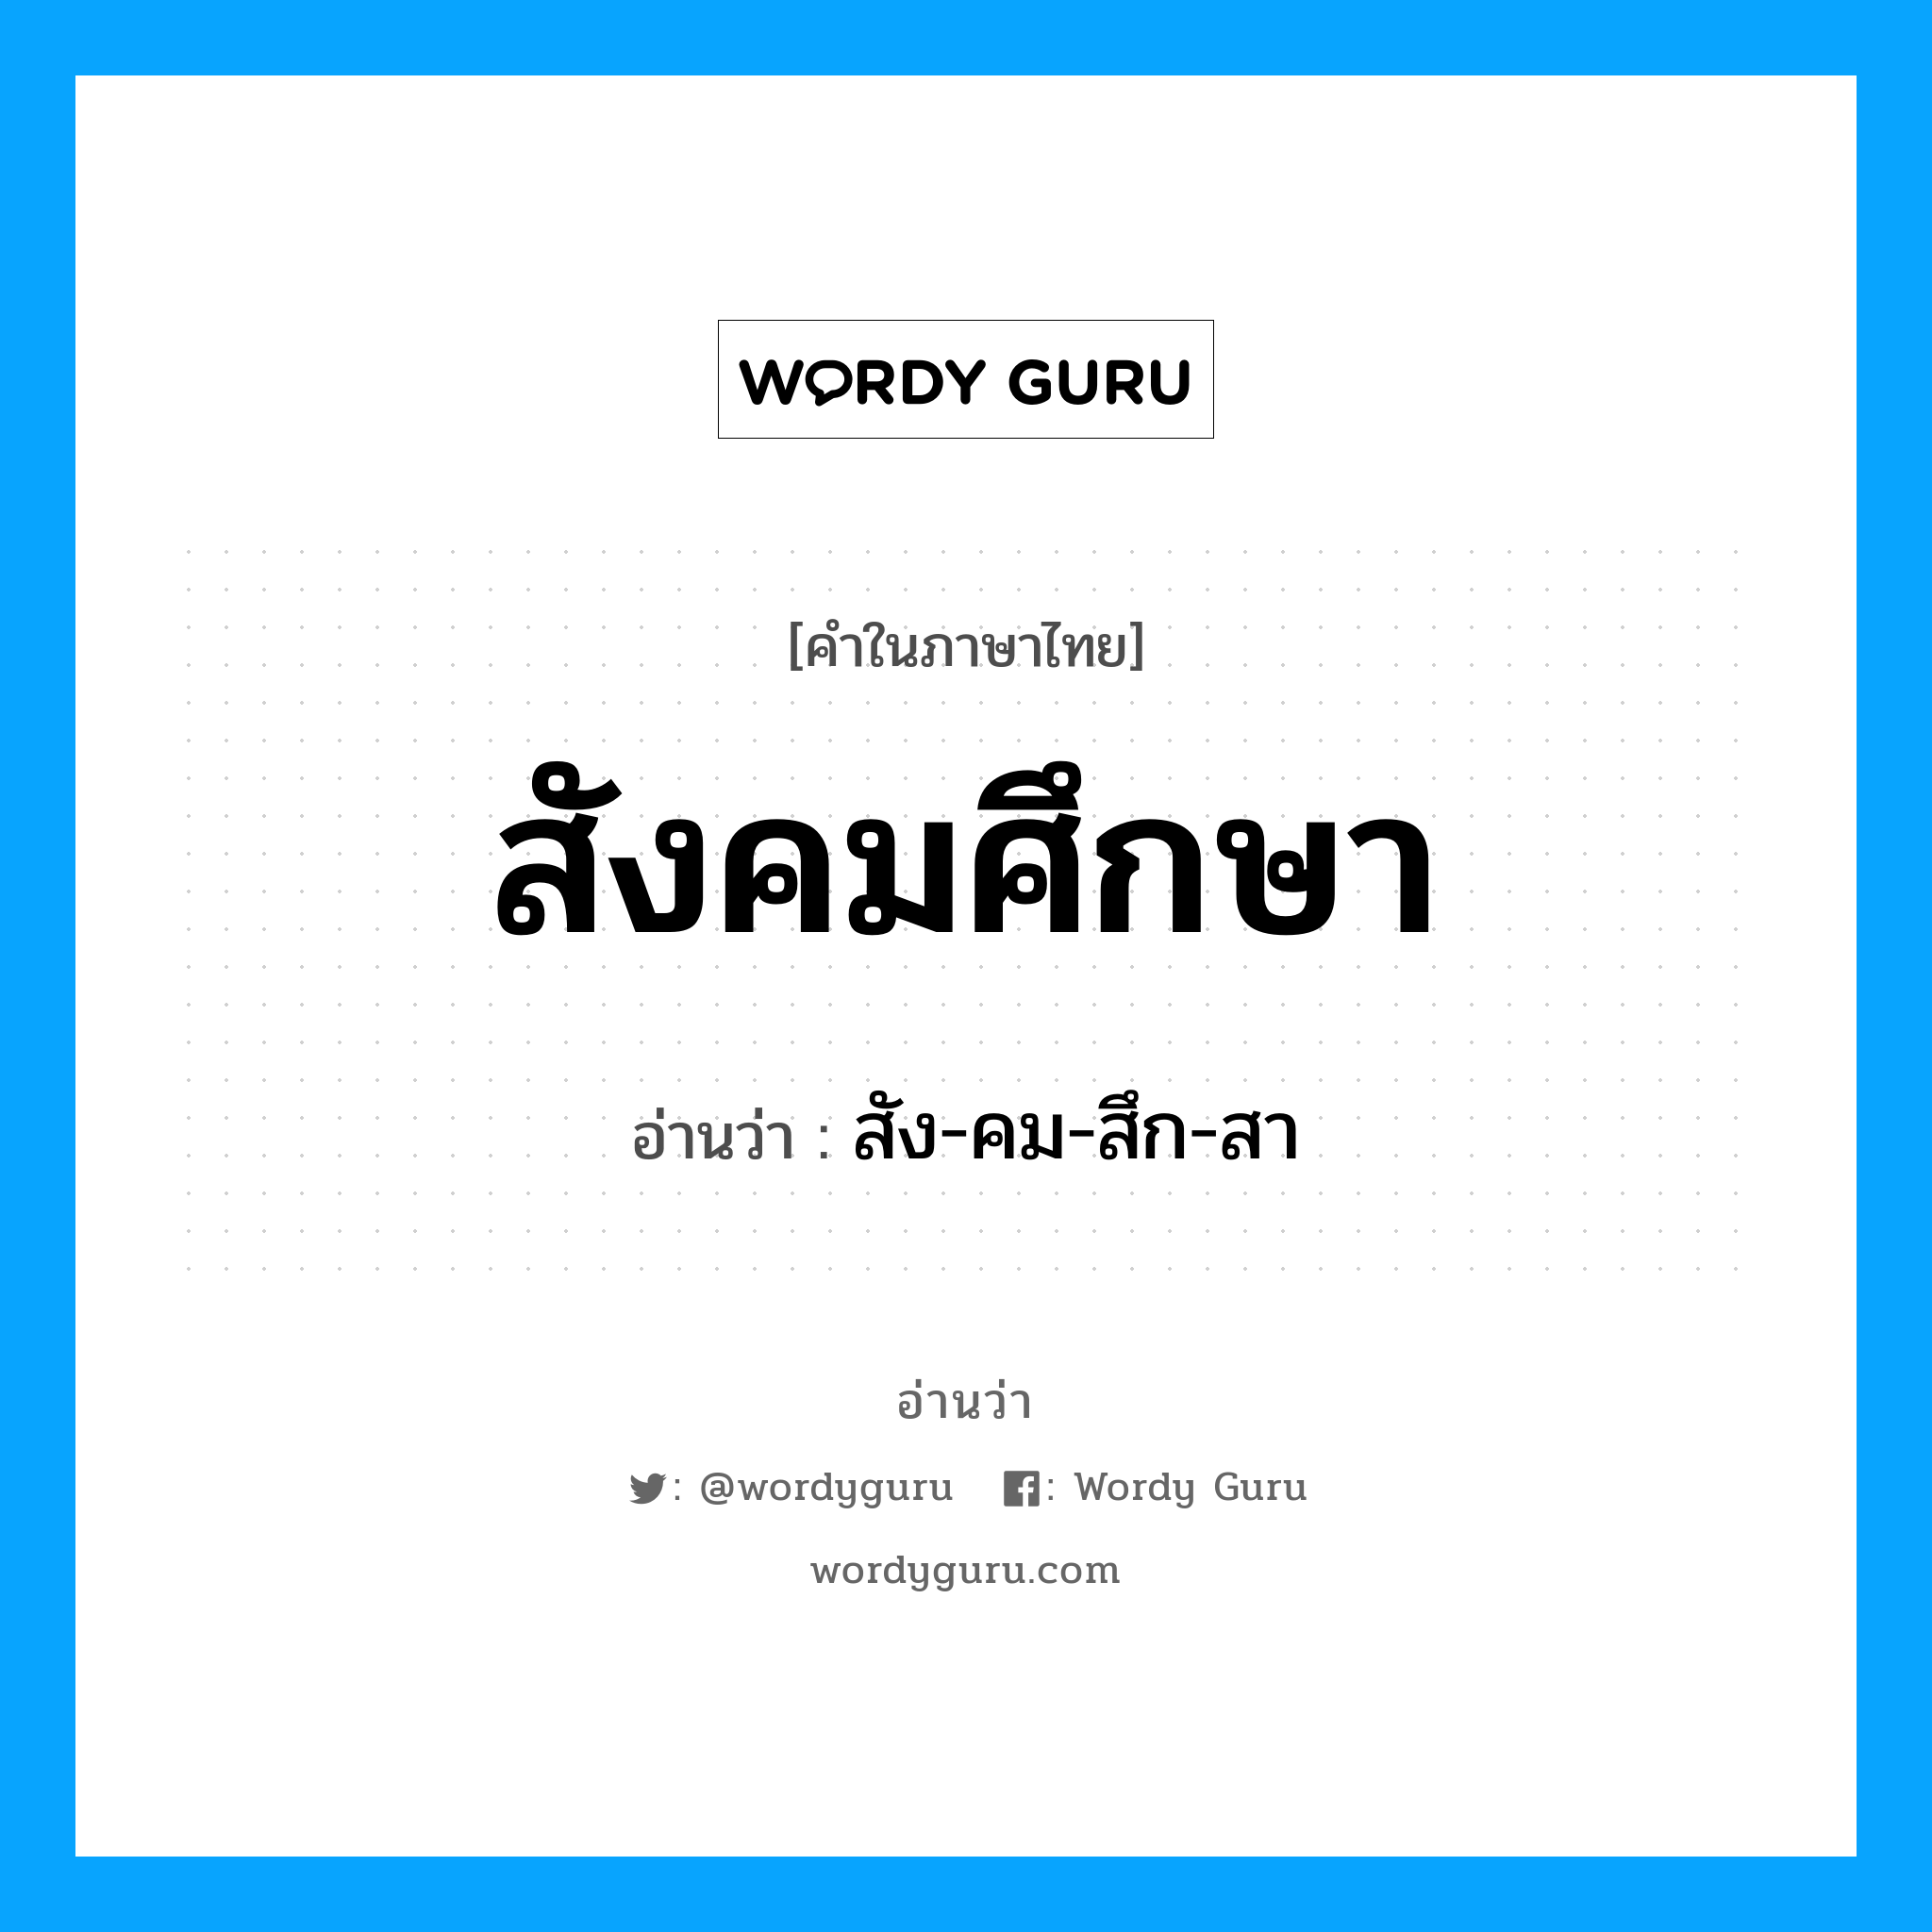 สัง-คม-สึก-สา เป็นคำอ่านของคำไหน?, คำในภาษาไทย สัง-คม-สึก-สา อ่านว่า สังคมศึกษา